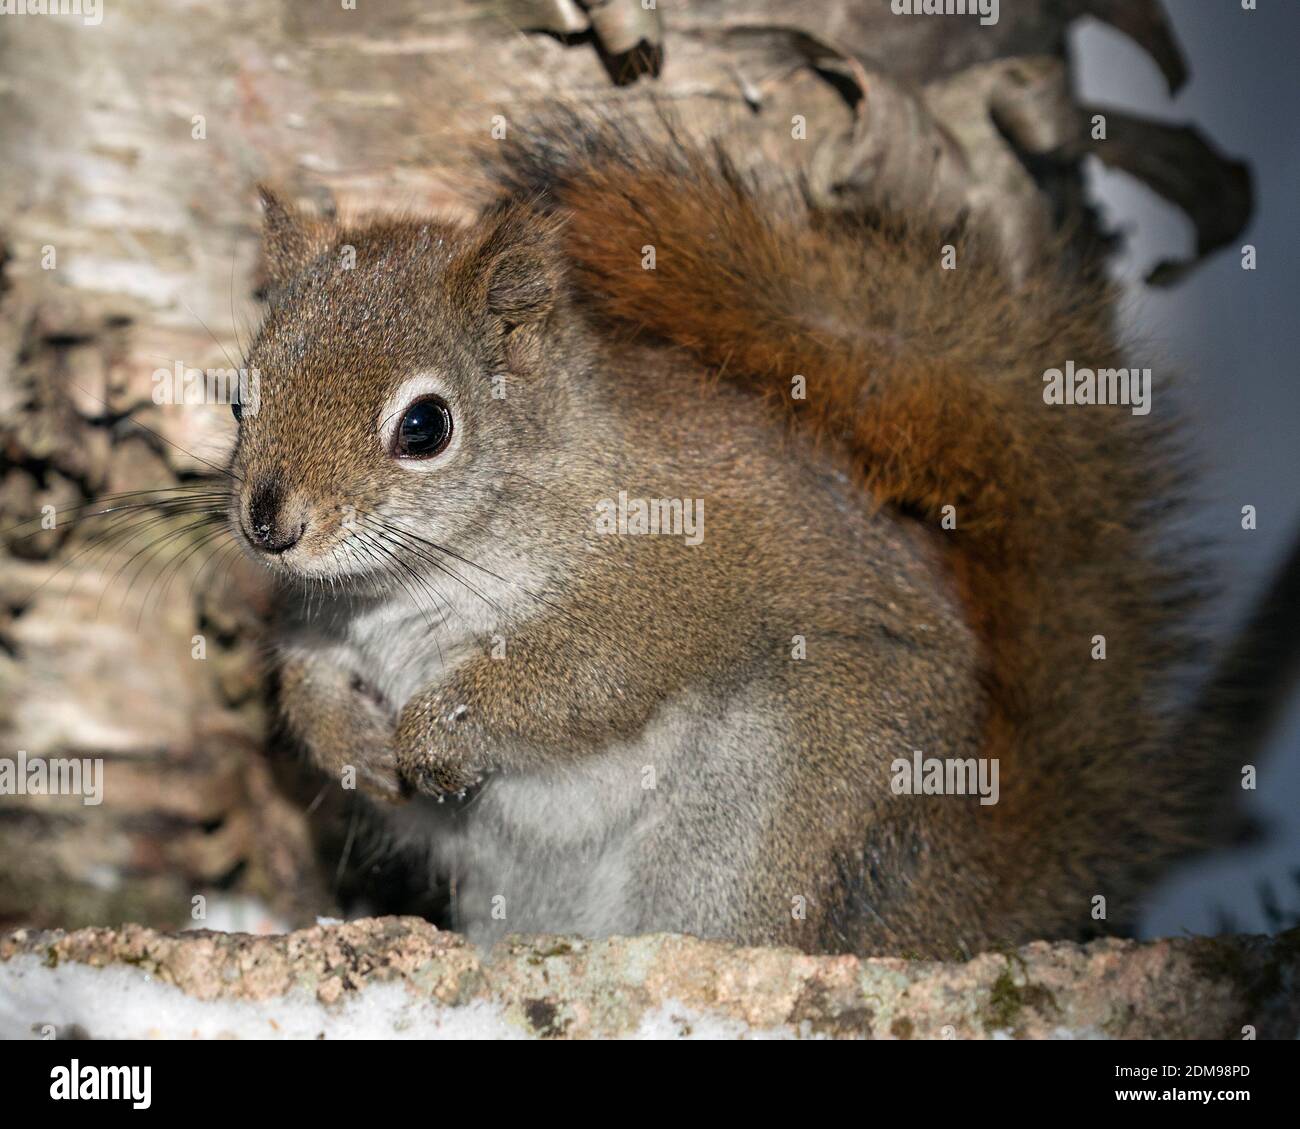 Vista ravvicinata del profilo dello scoiattolo nella foresta seduta su una roccia di muschio con sfondo sfocato che mostra la sua pelliccia marrone, la testa, gli occhi, le orecchie, le zampe, la coda bushy. Foto Stock